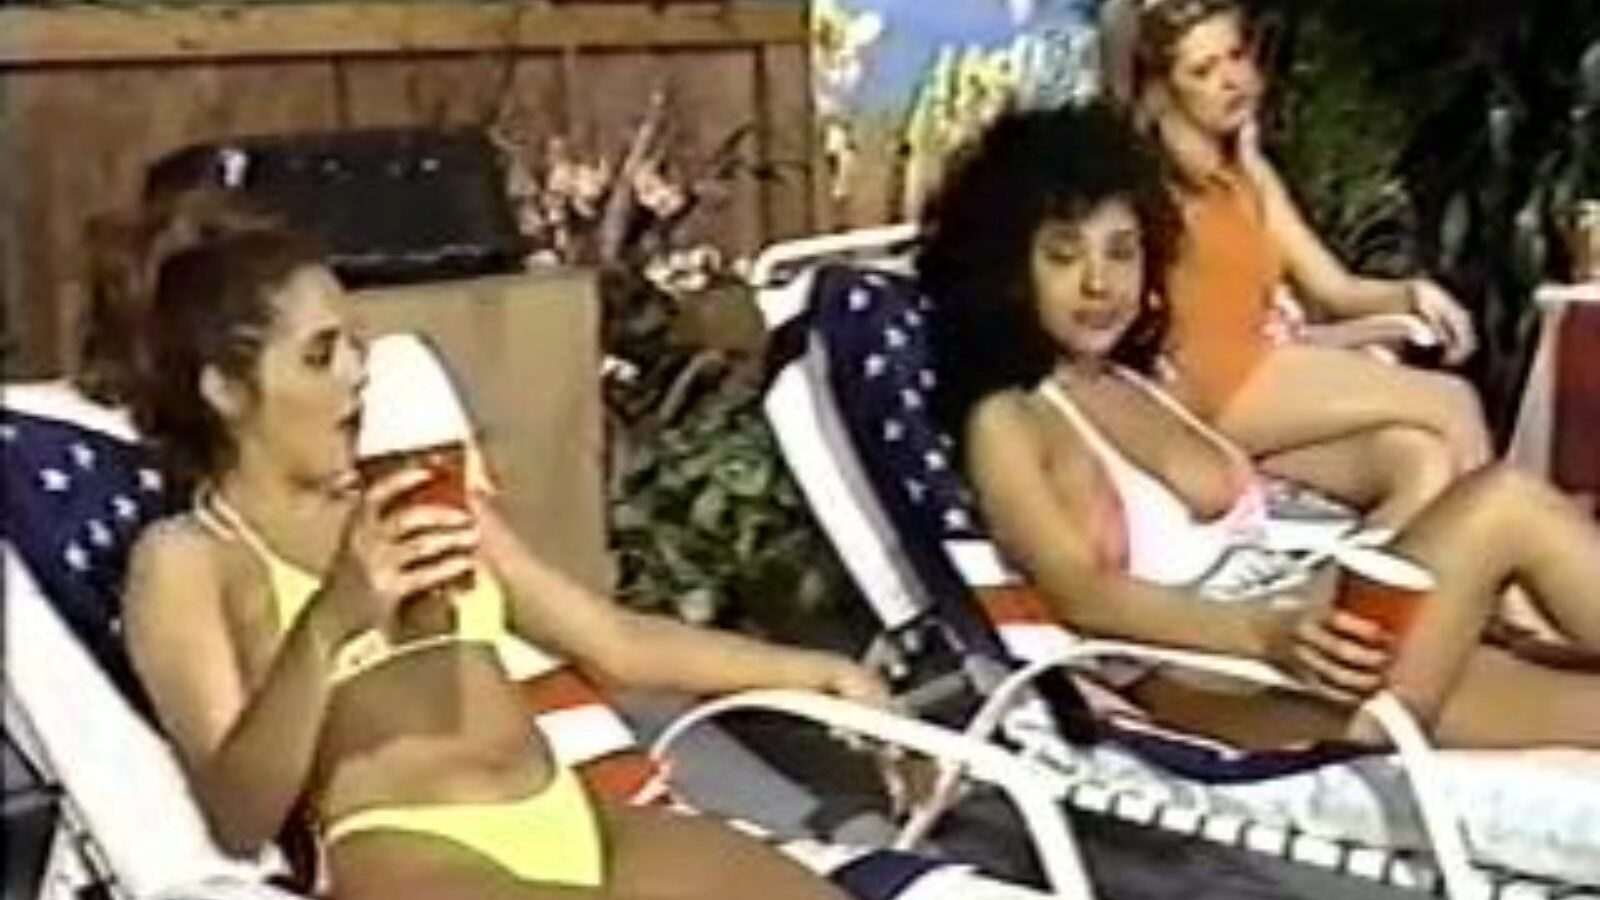 retro usa 693 90-ih: besplatni porno video 0c - xhamster gledaj retro usa 693 90-ih cijev zajebavaj epizodu besplatno za sve na xhamsteru, s najseksi kolekcijom besplatnih porno filmova iz SAD-a i SAD-a iz 1992, 90-ih sekvence scena